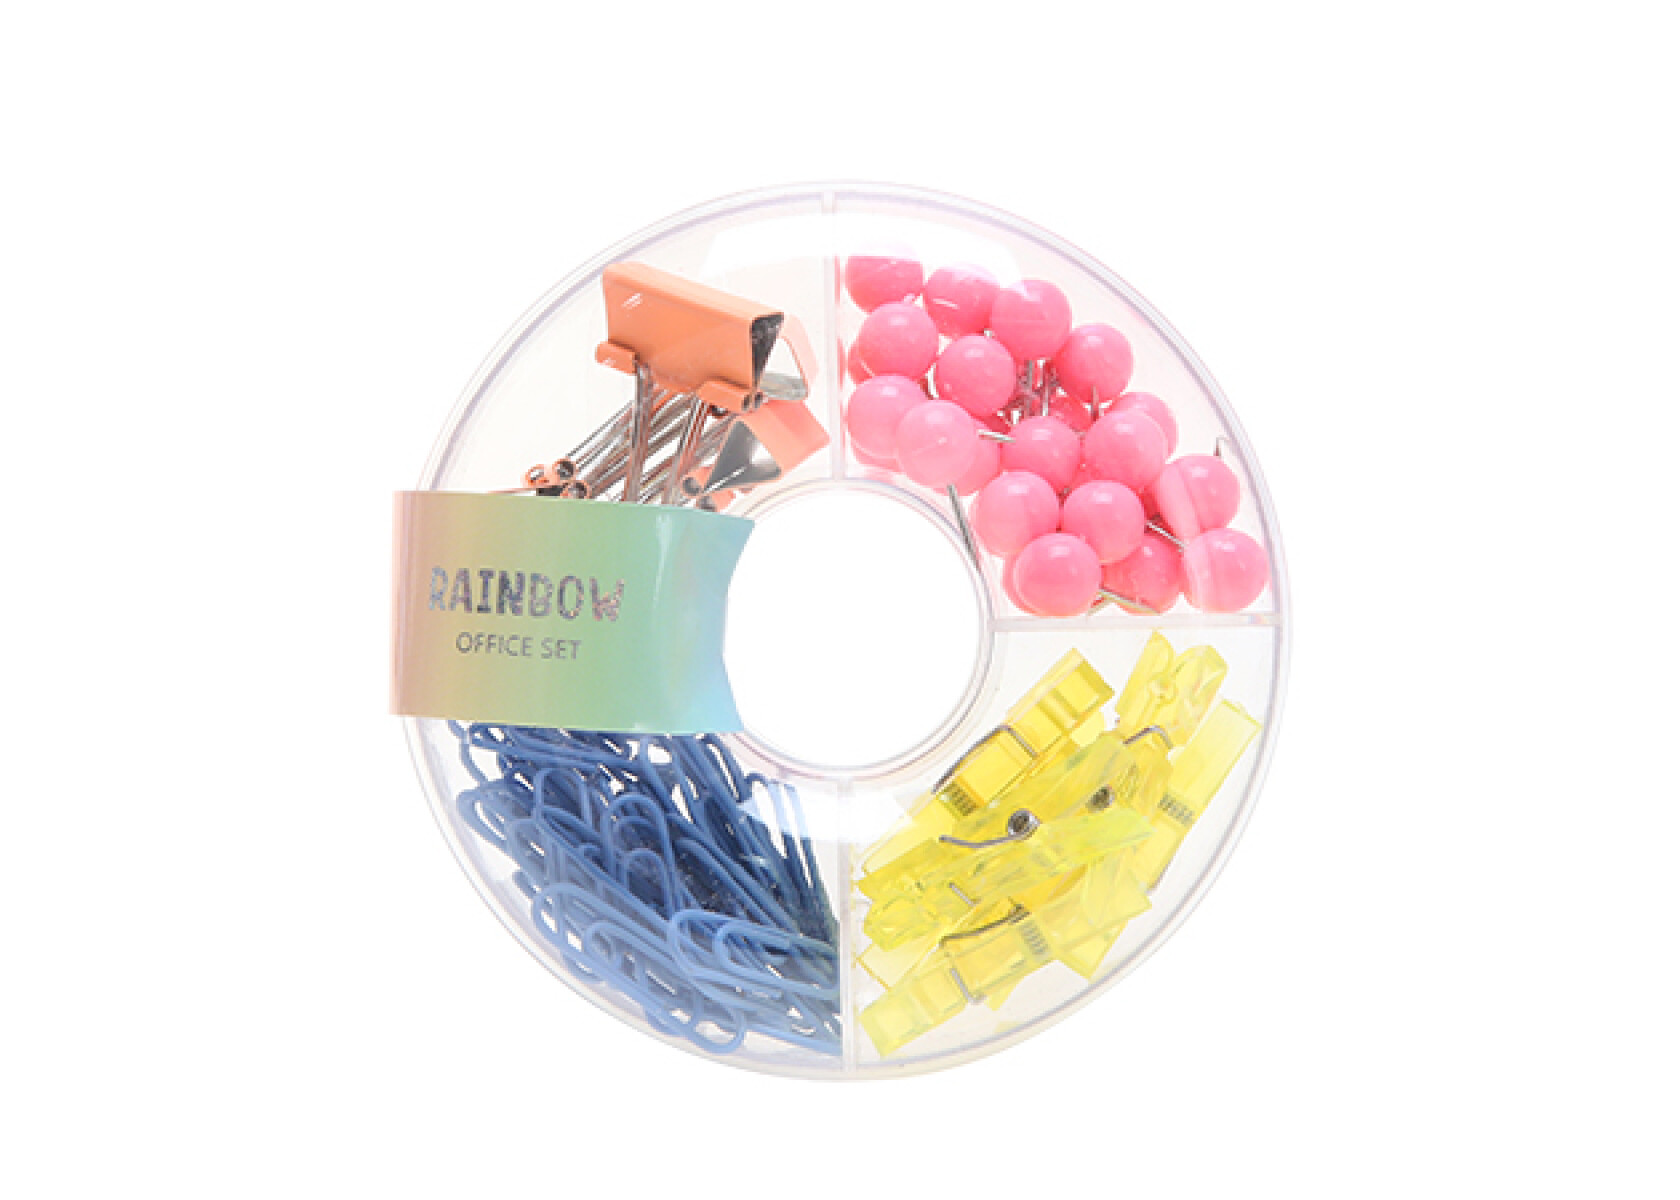 Set de accesorios oficina Candy 